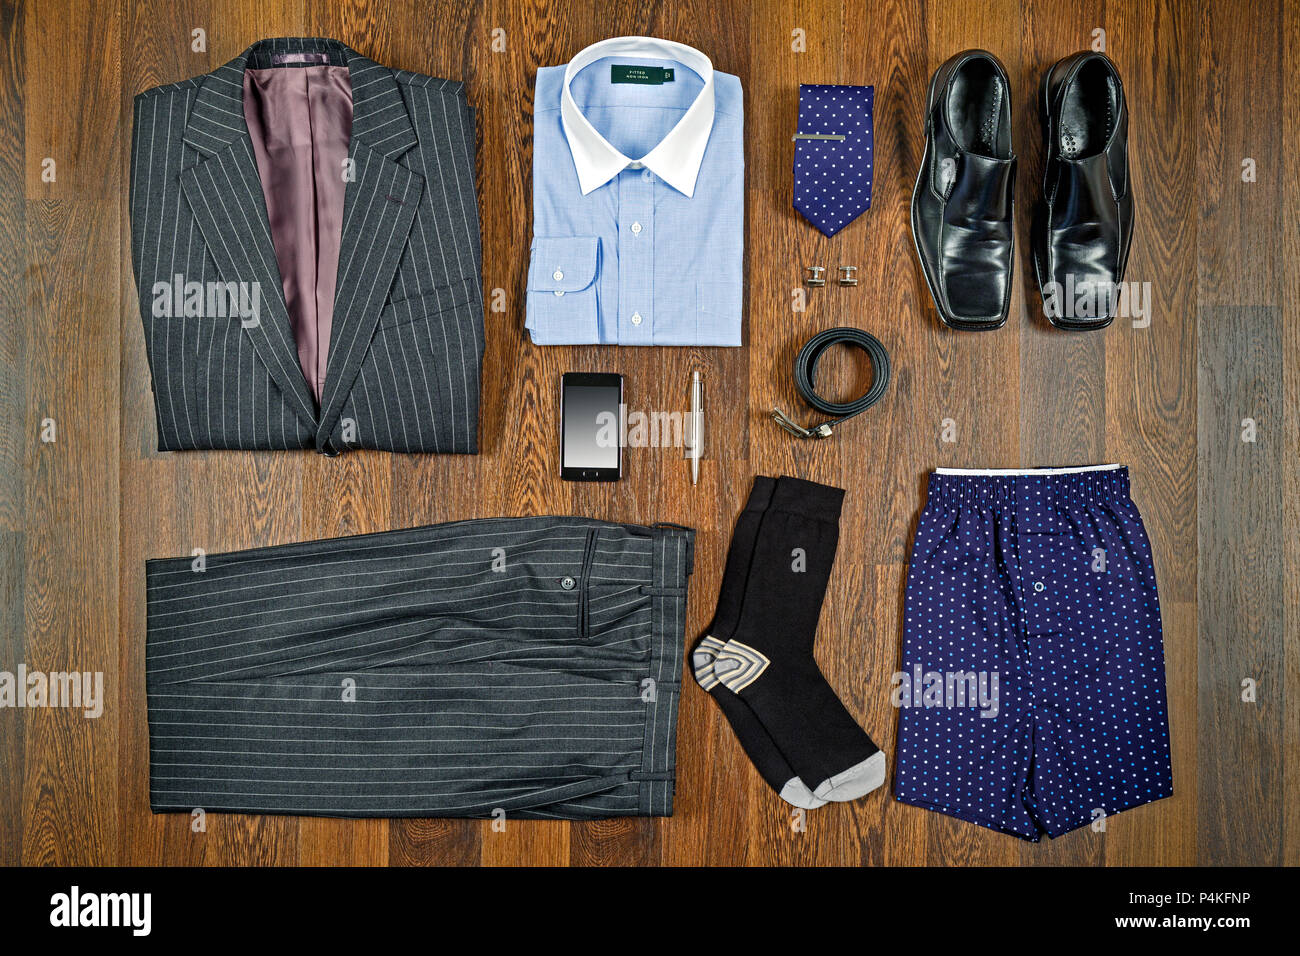 Ein flach Anordnung der mens Geschäftskleidung mit grau-gestreiften Anzug, weisses Shirt, schwarze Schuhe und passende Accessoires. Stockfoto